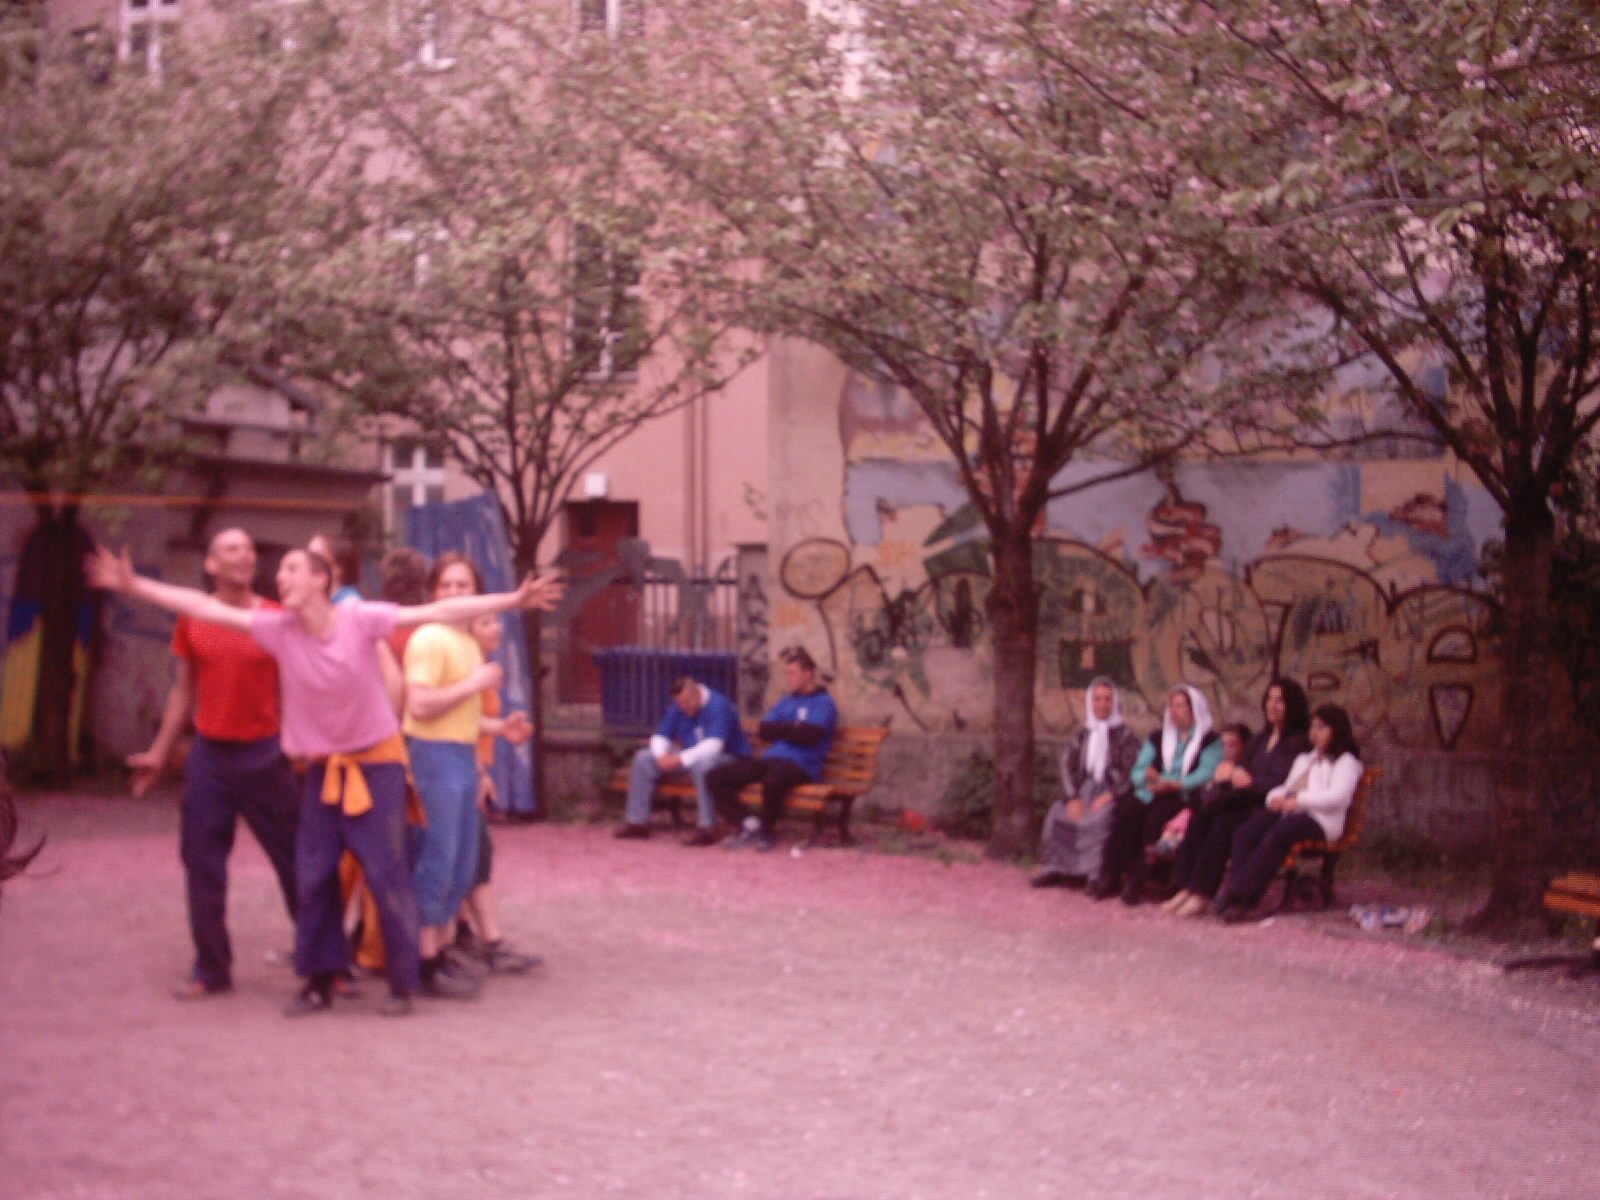 Photo von einer Theateraufführung am 1. Mai 2004 in Kreuzberg in Berlin (Germany). Copyright by Kim Hartley.